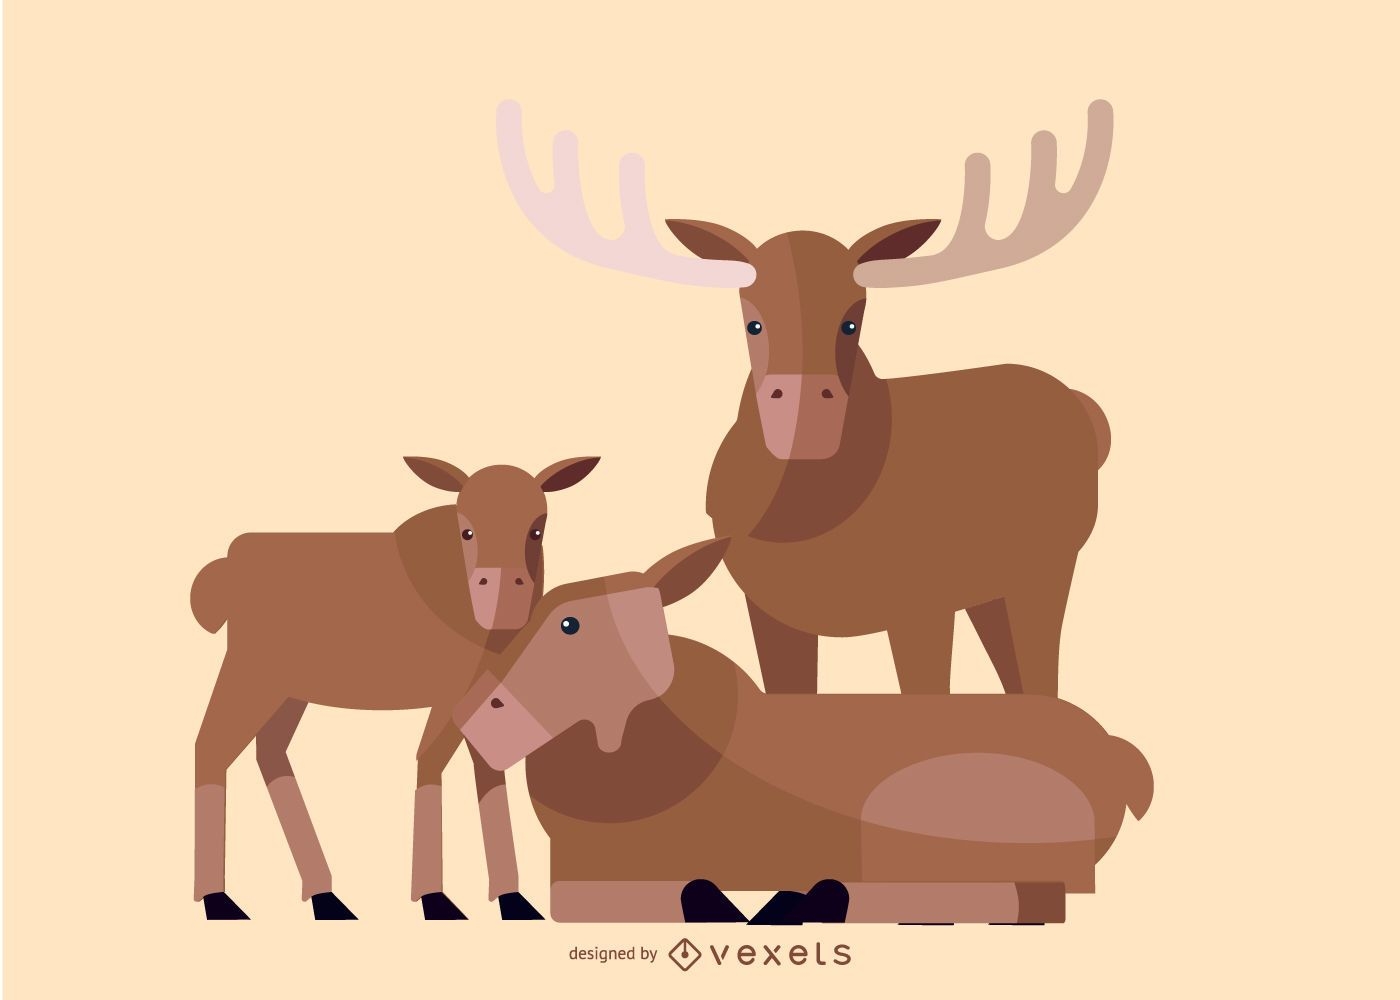 Deer family illustration